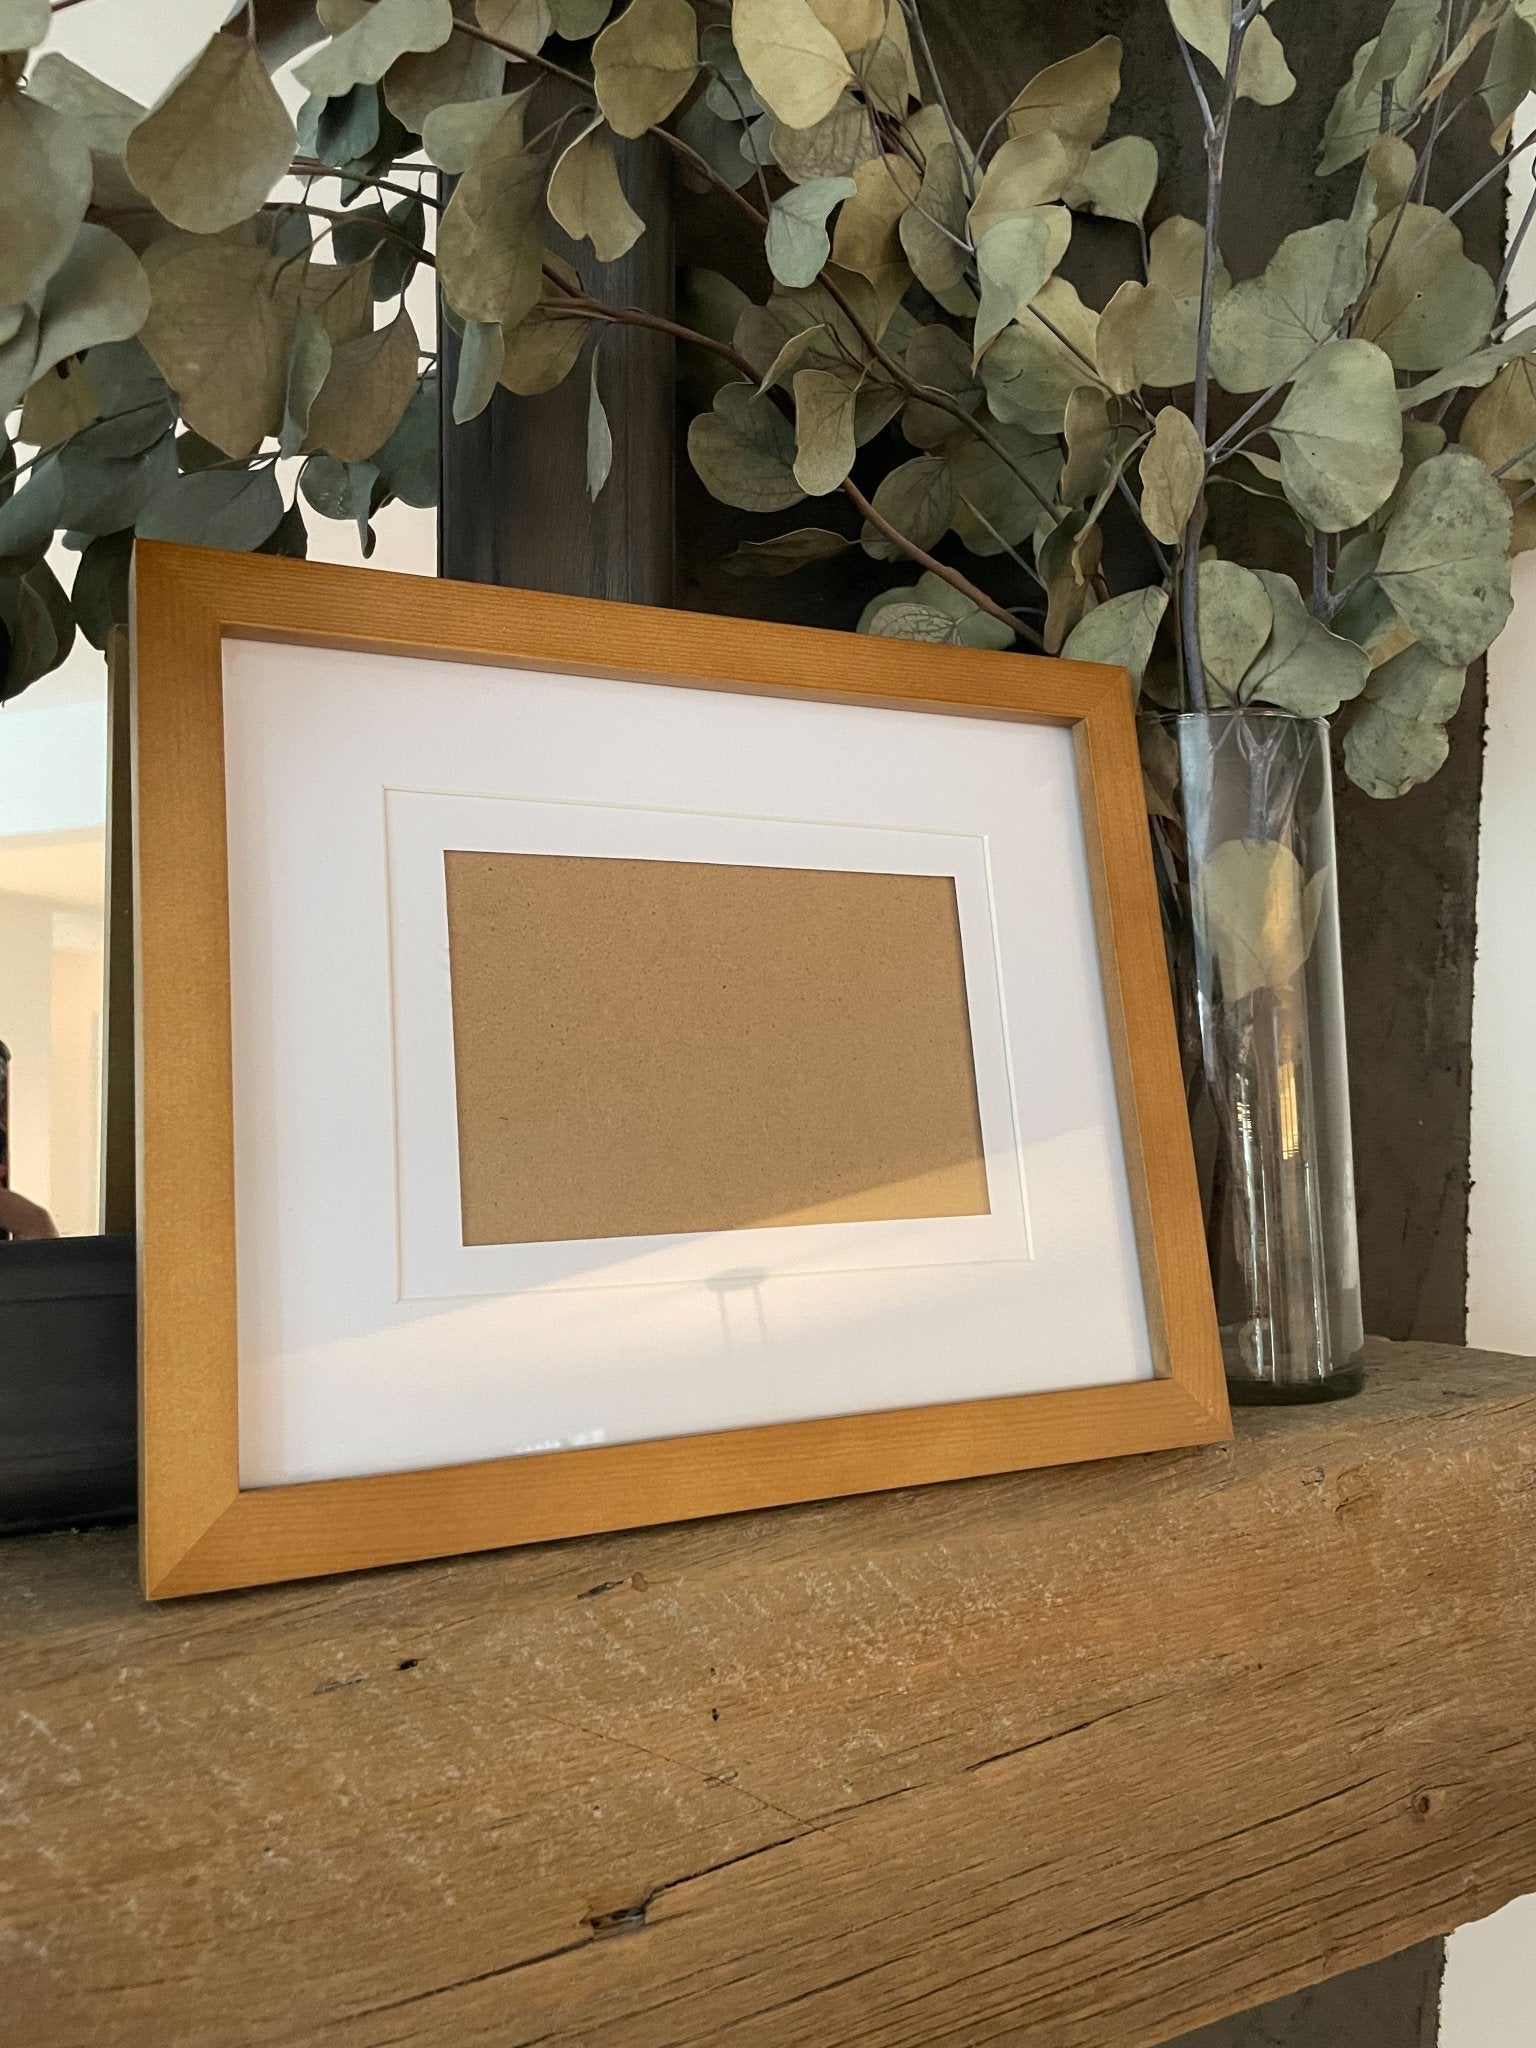 8x10 Light Brown Frame - CHANTEL BETTENCOURT ART